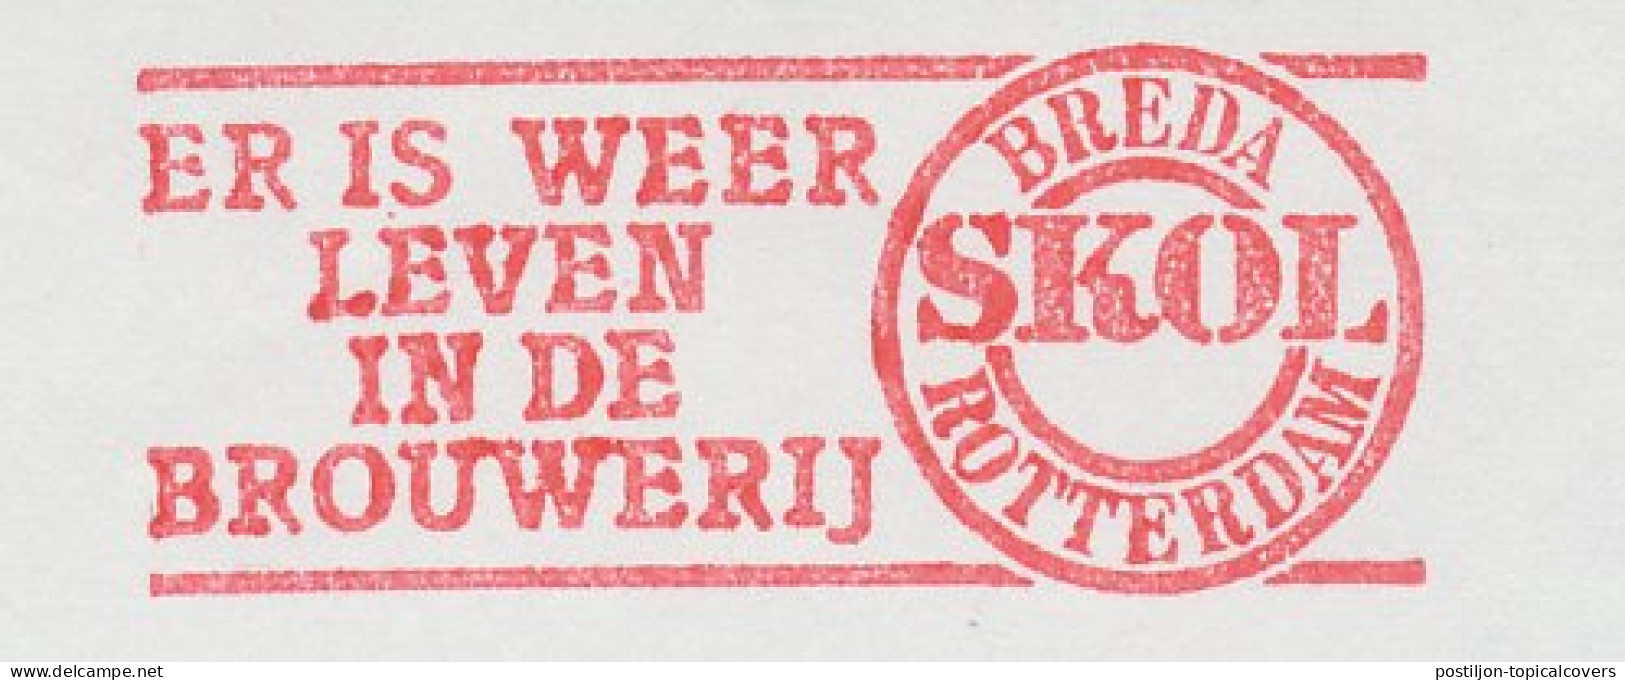 Meter Cut Netherlands 1983 Beer - Skol - Brewery - Vins & Alcools